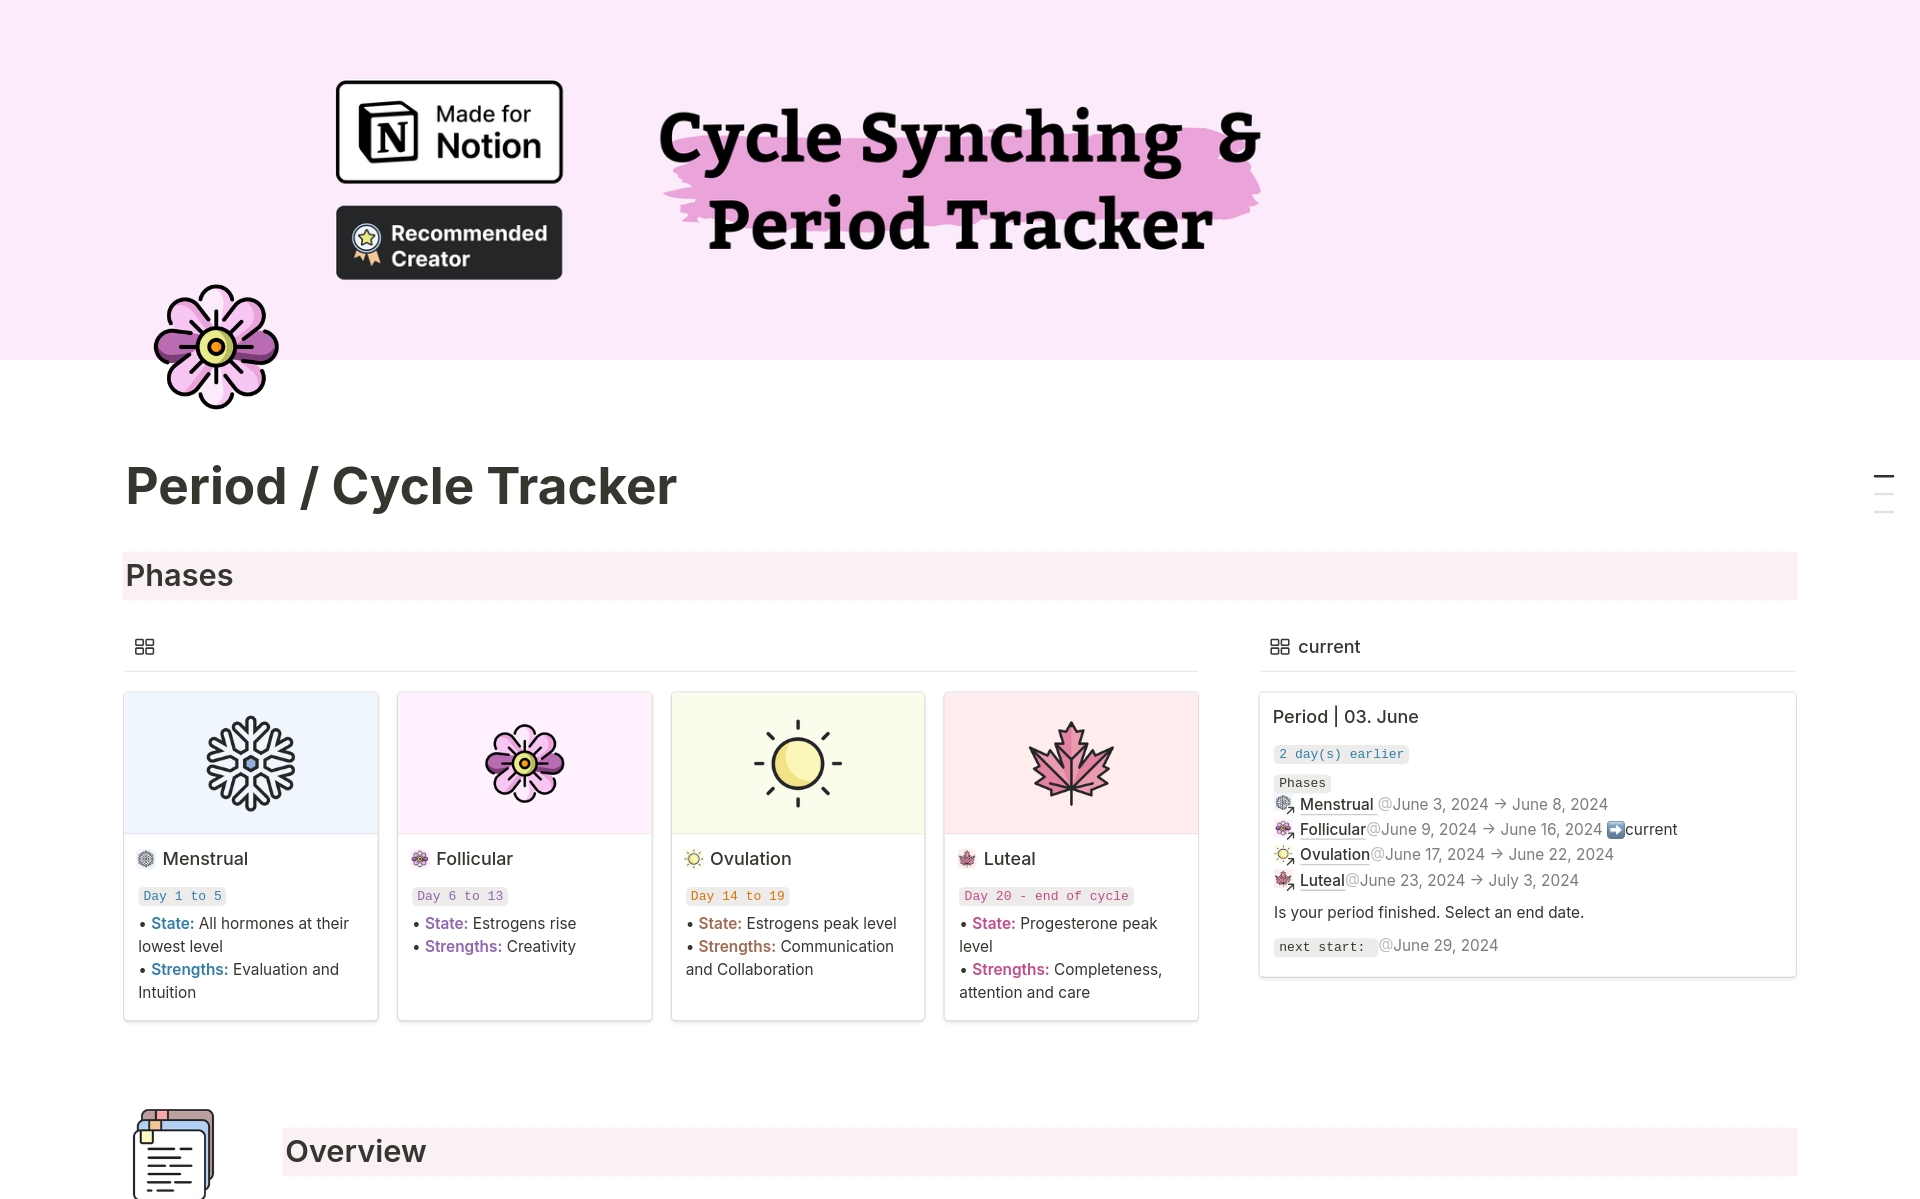 Uma prévia do modelo para Cycle Synching  & Period Tracker